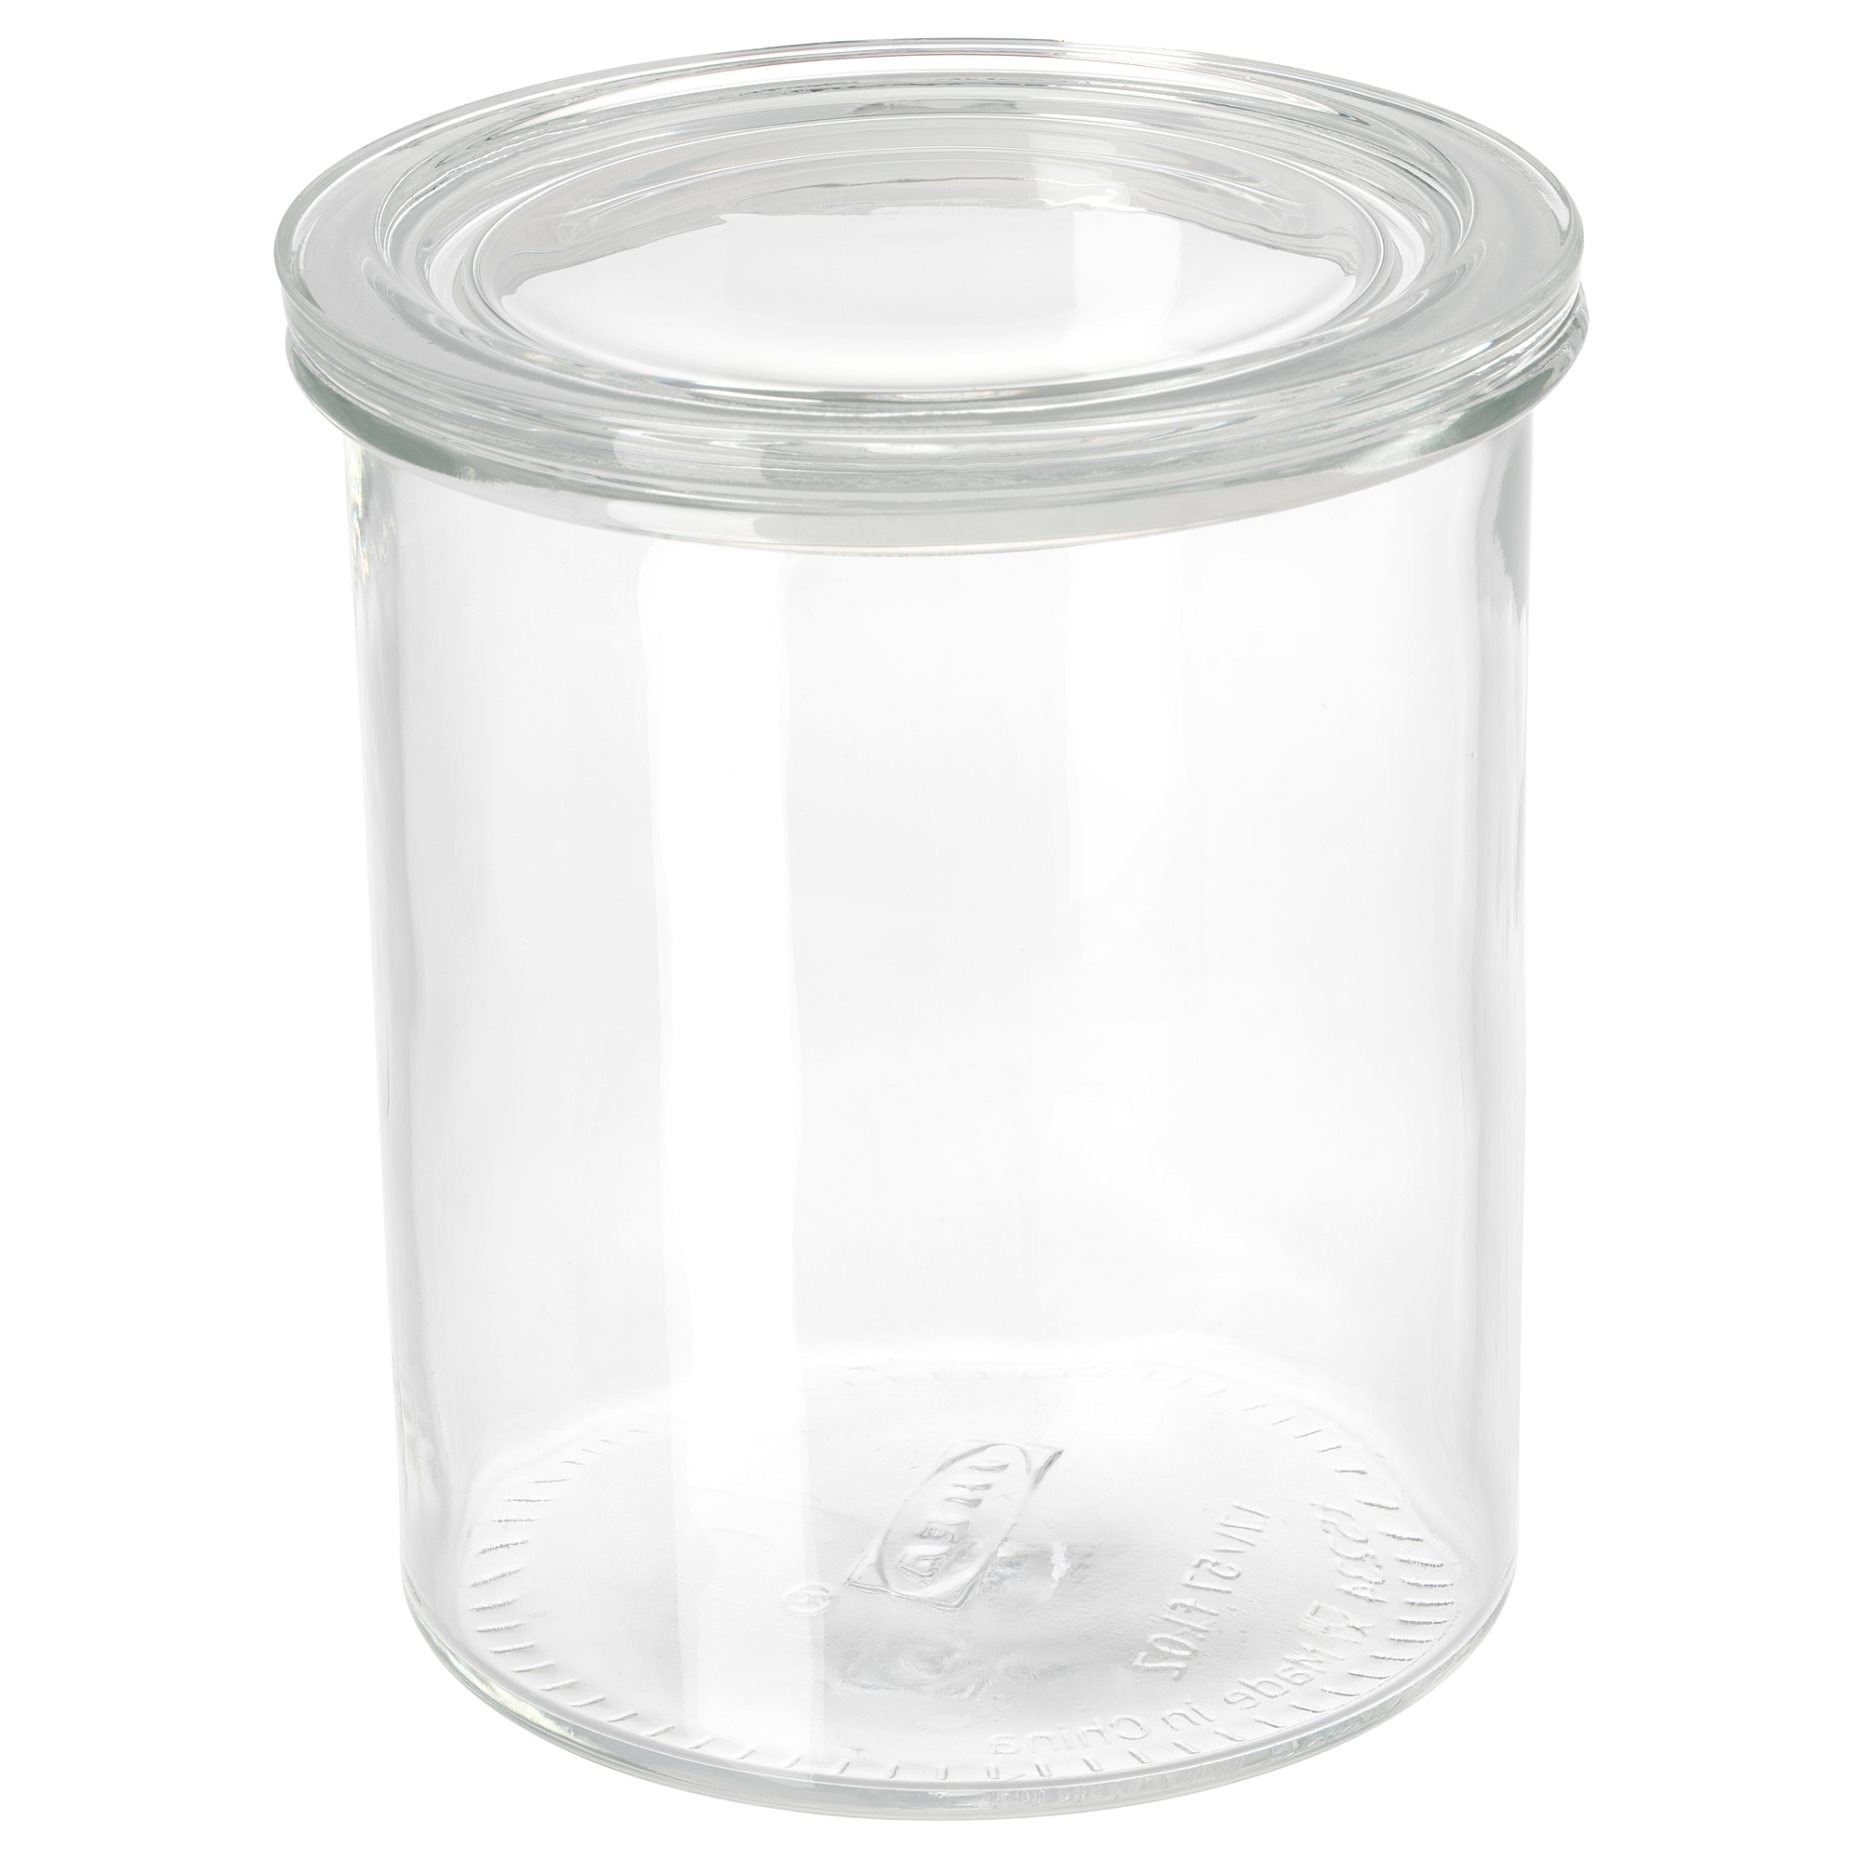 IKEA 365+, jar with lid, 892.767.88